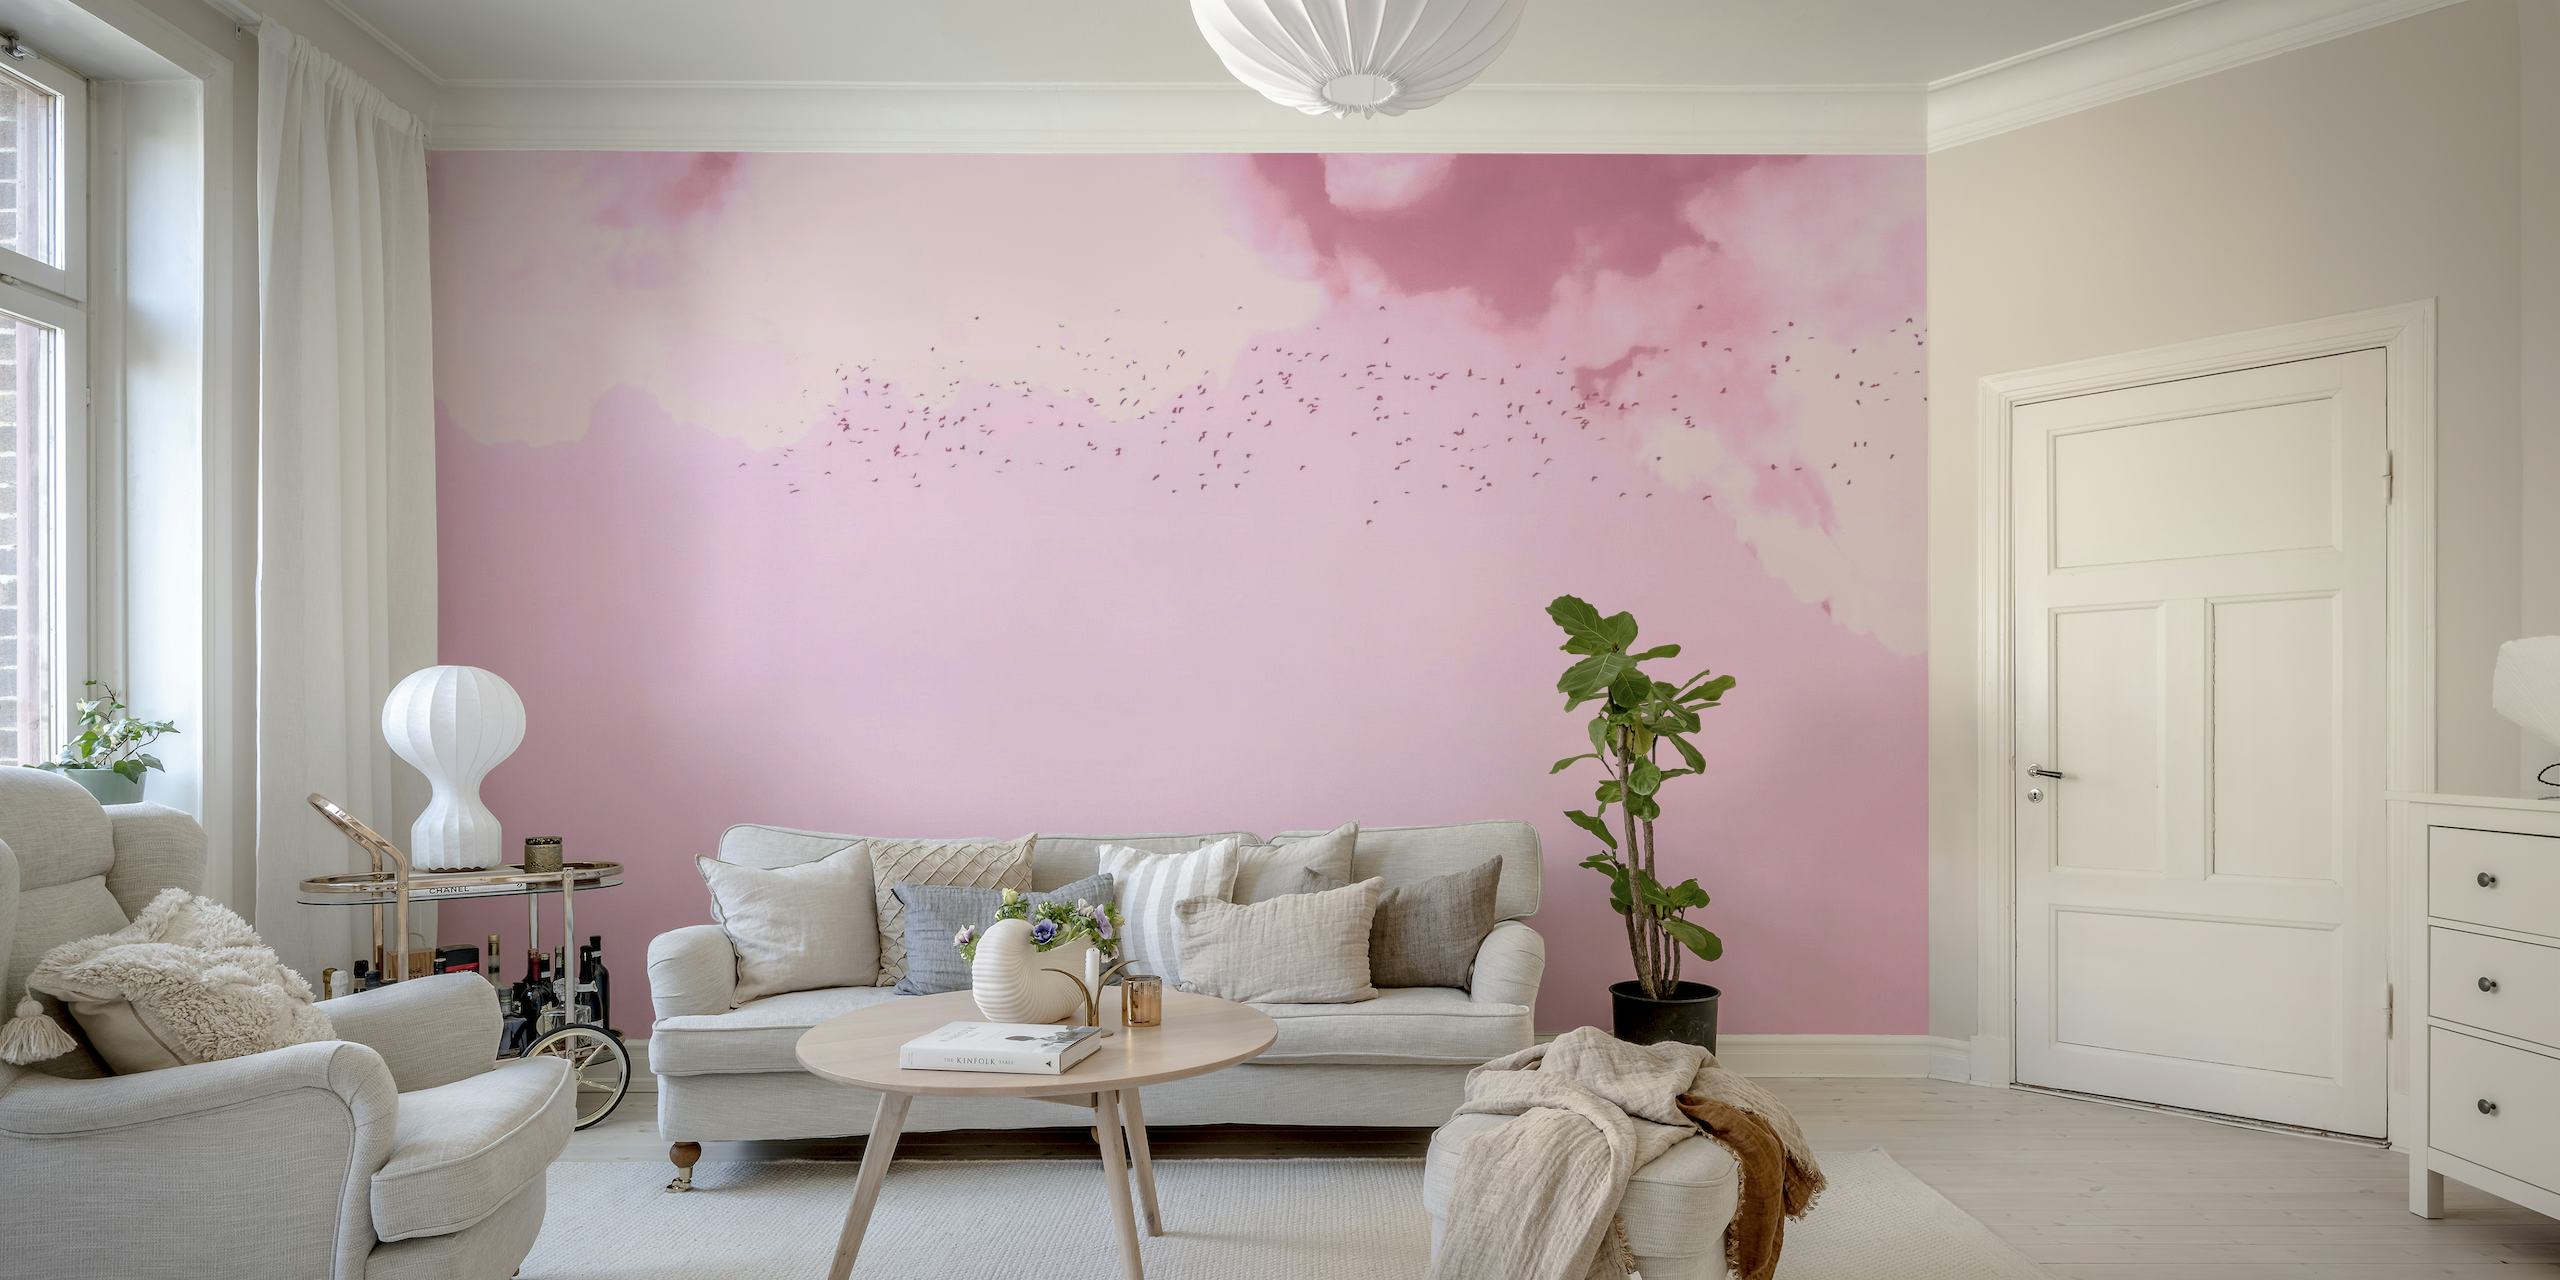 Un murale da sogno rosa e magenta che raffigura uccelli in volo tra soffici nuvole